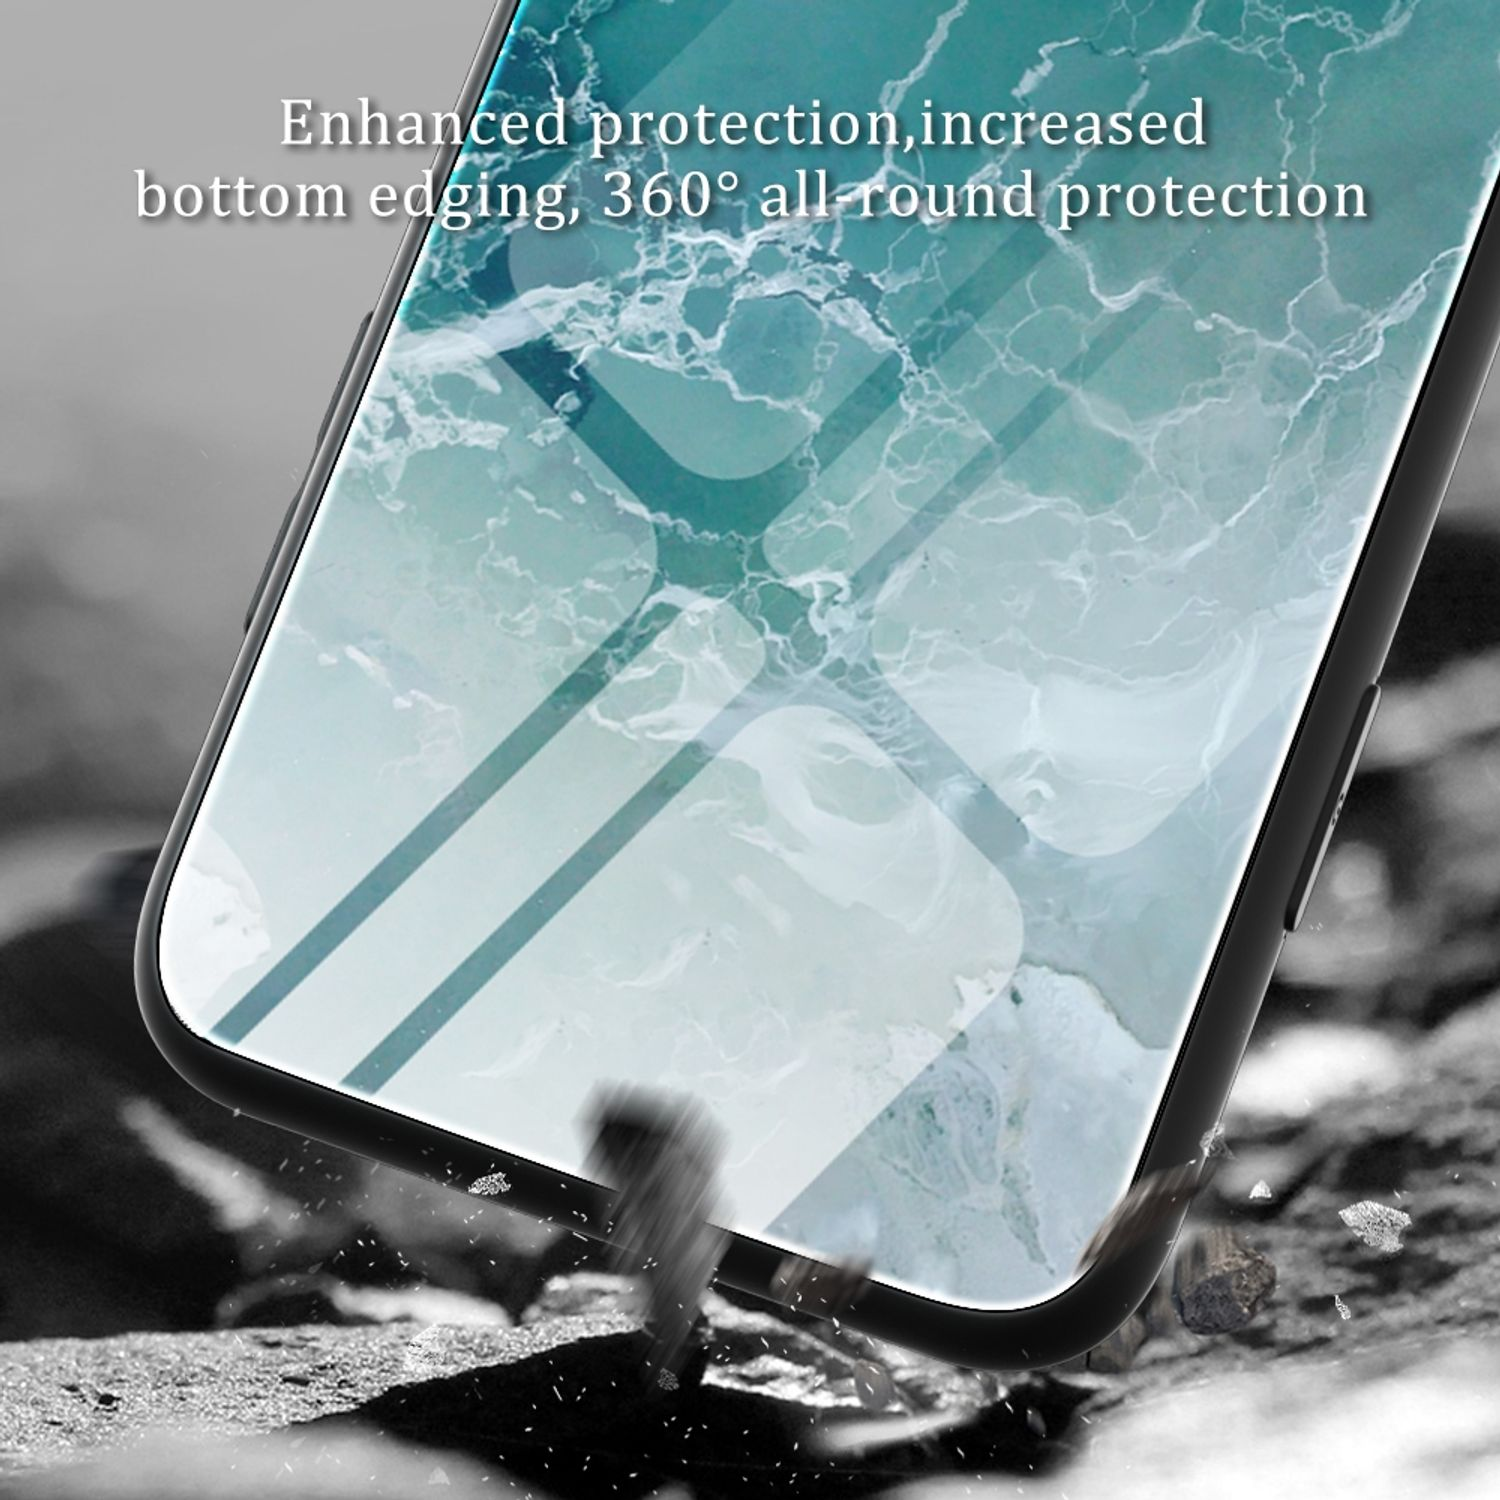 KÖNIG DESIGN Case, Wasserwellen iPhone XS Apple, Max, Backcover